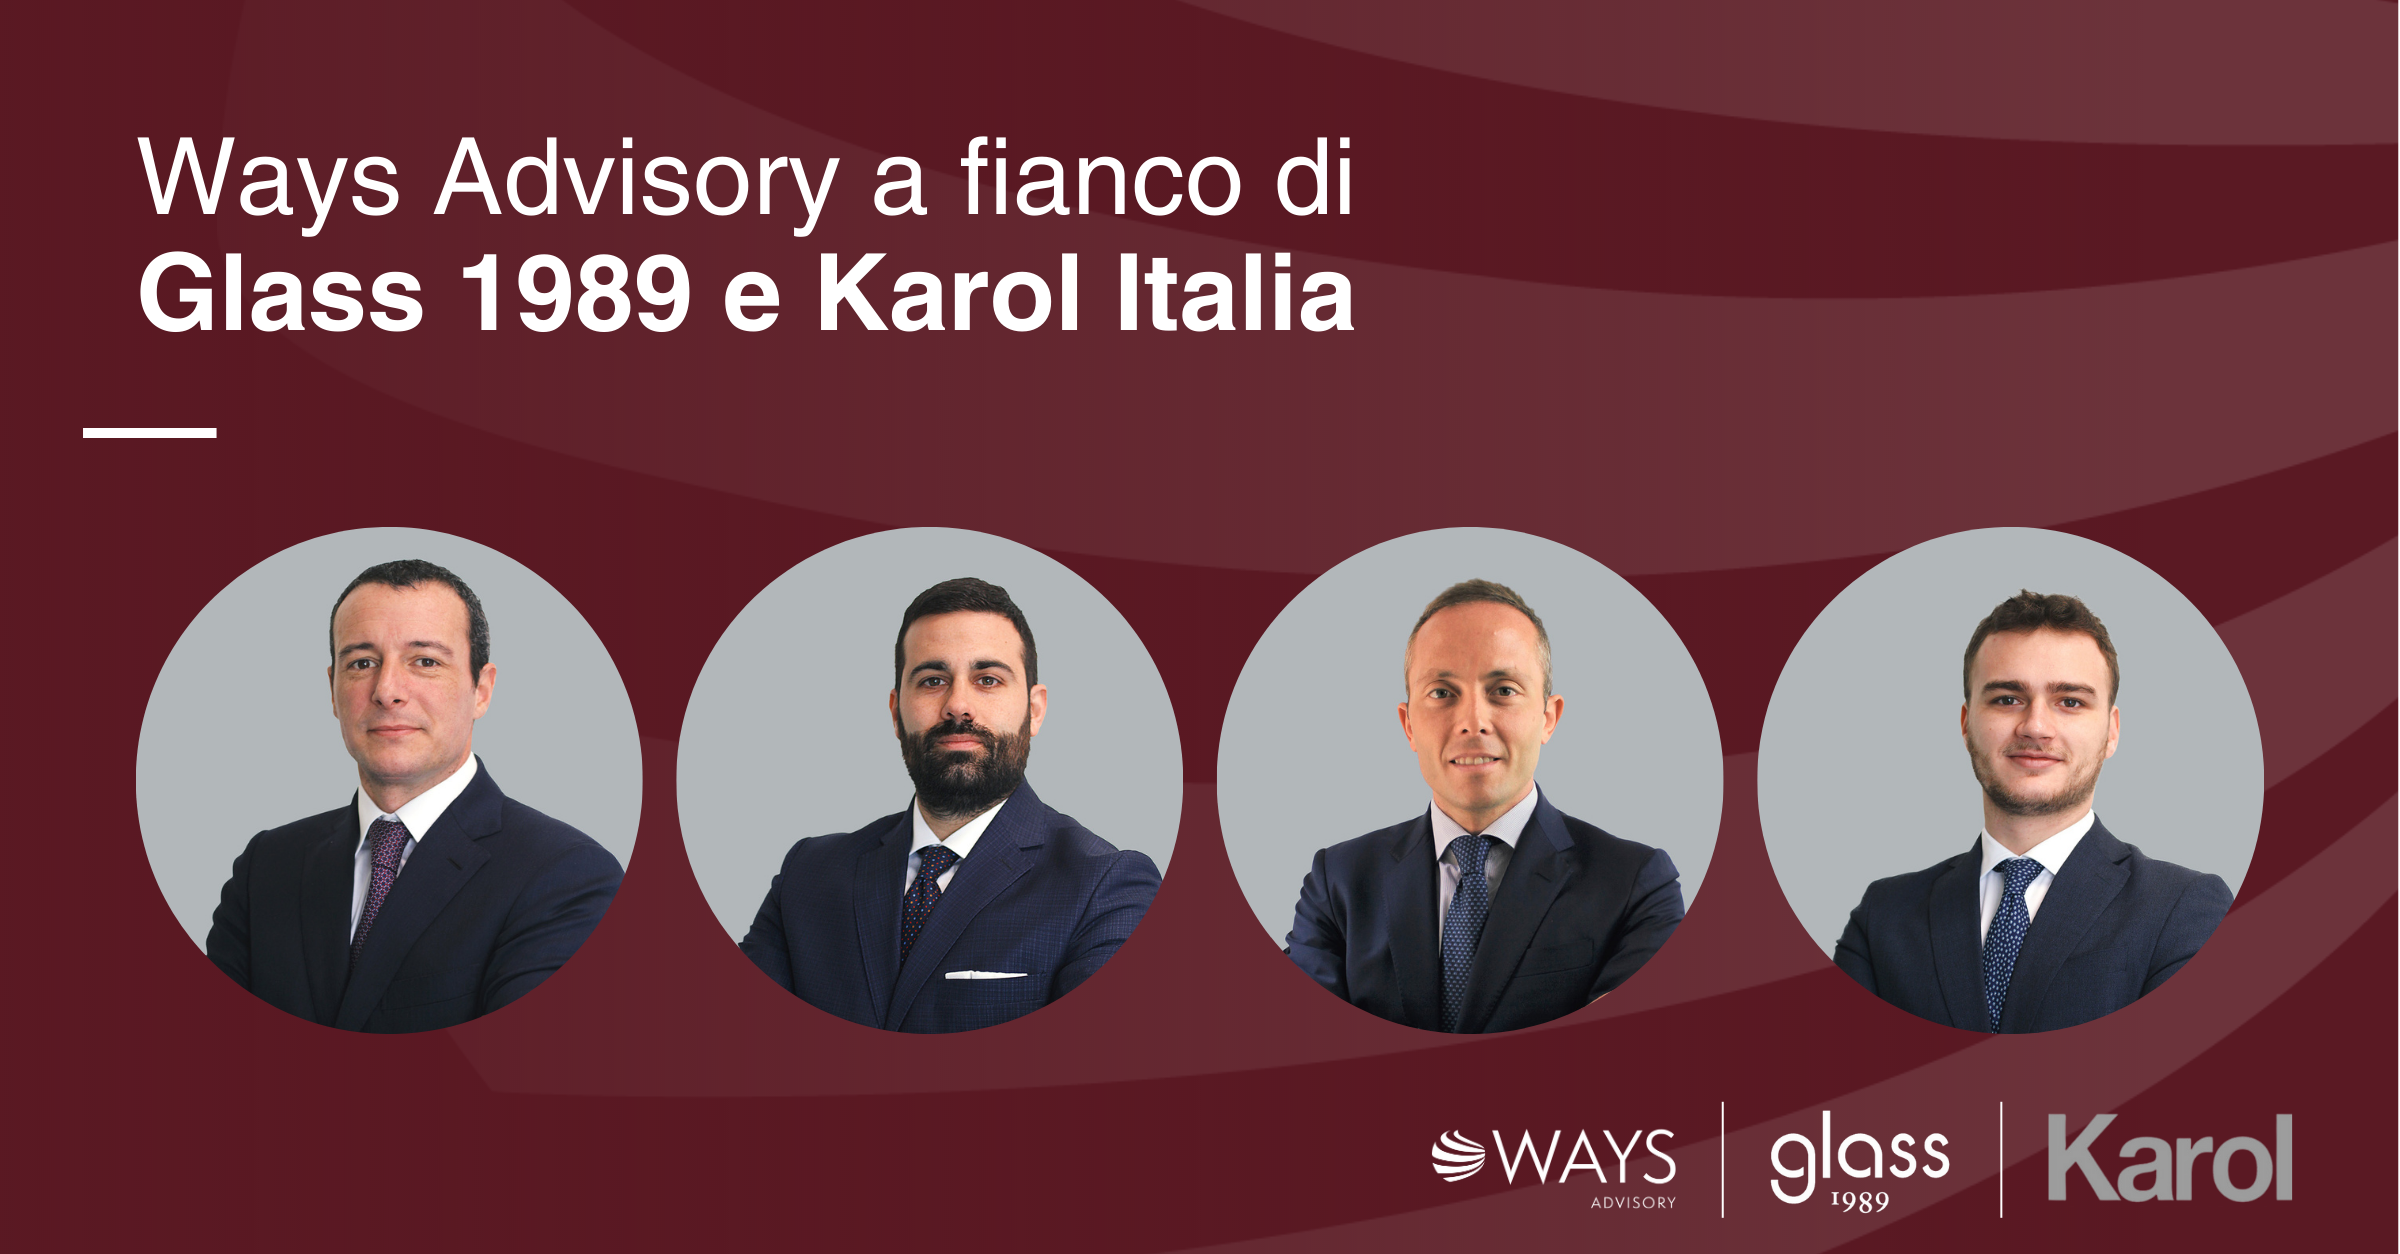 Ways Advisory a fianco di Glass 1989 s.r.l. e Karol Italia in qualità di Advisor Finanziario